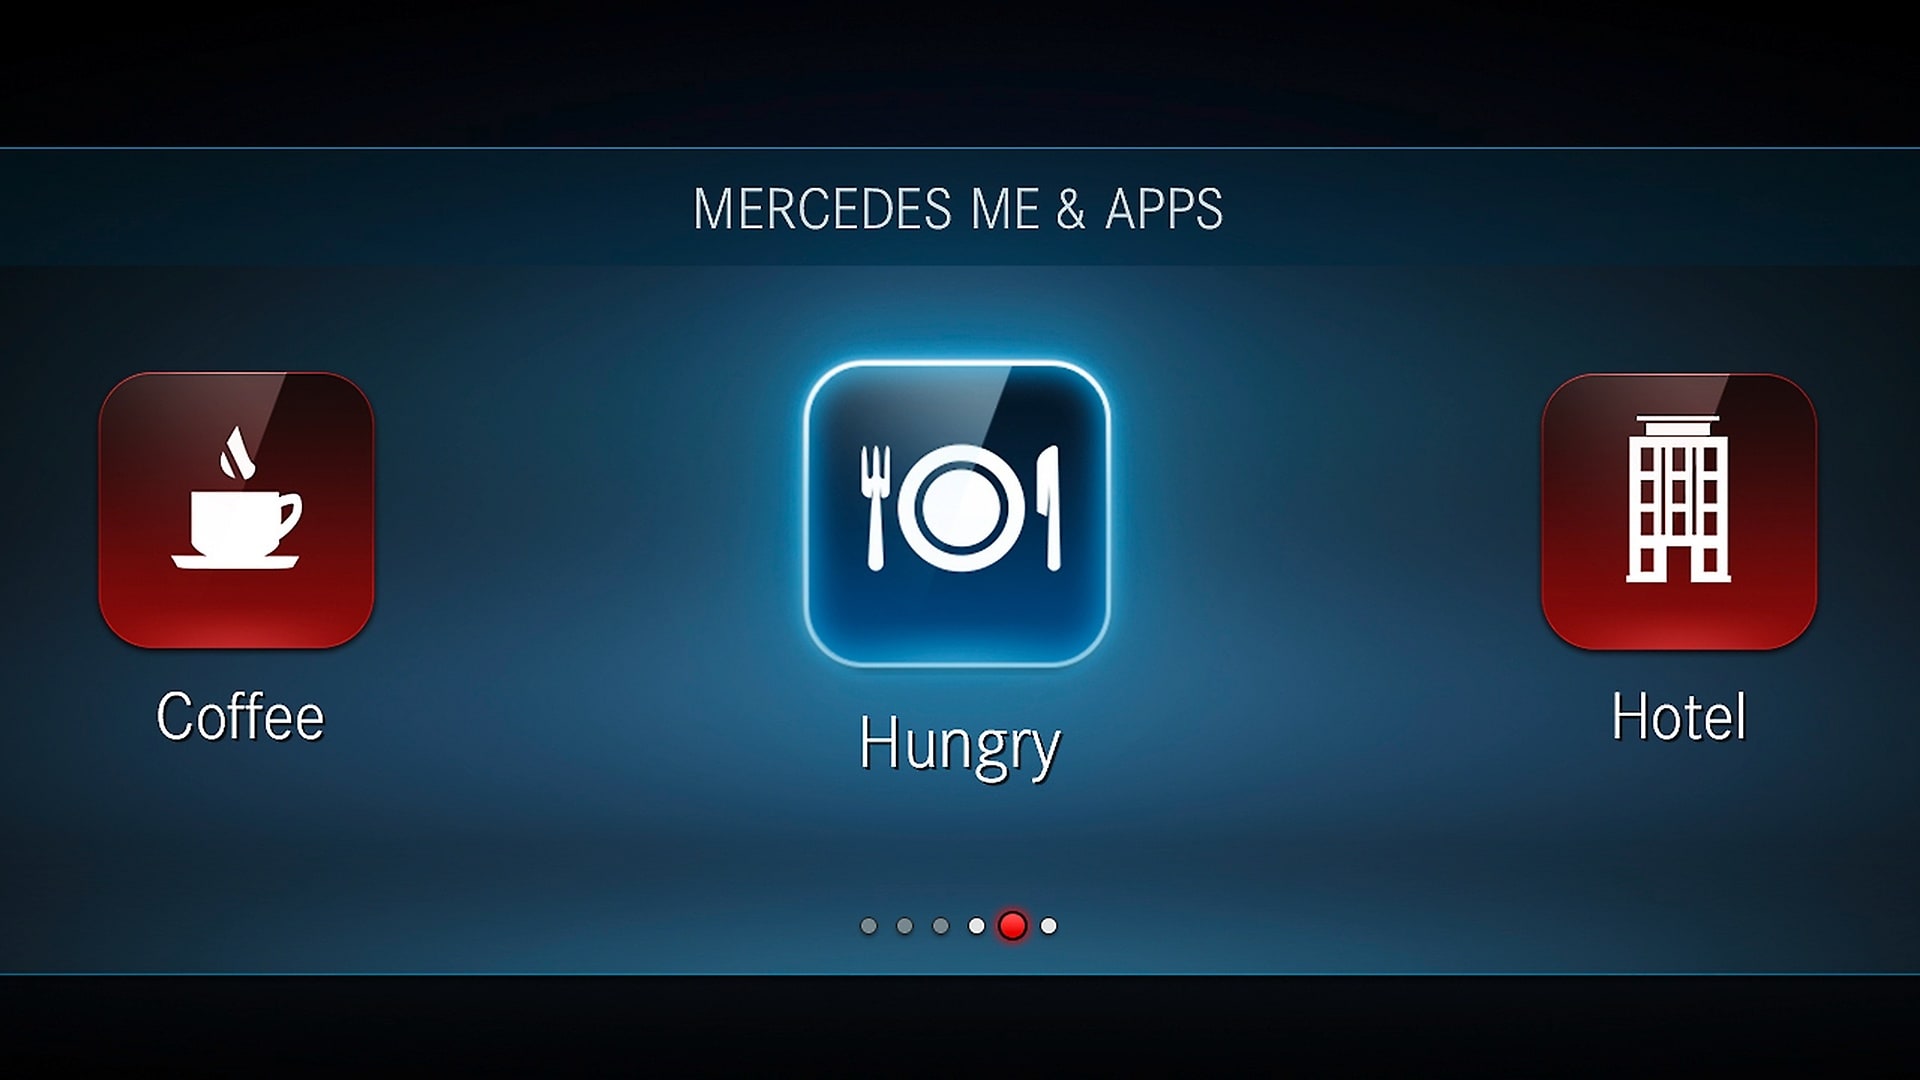 Das Infotainment-System „MBUX“ (Mercedes-Benz User Experience). Innovative Technologie basierend auf künstlicher Intelligenz.